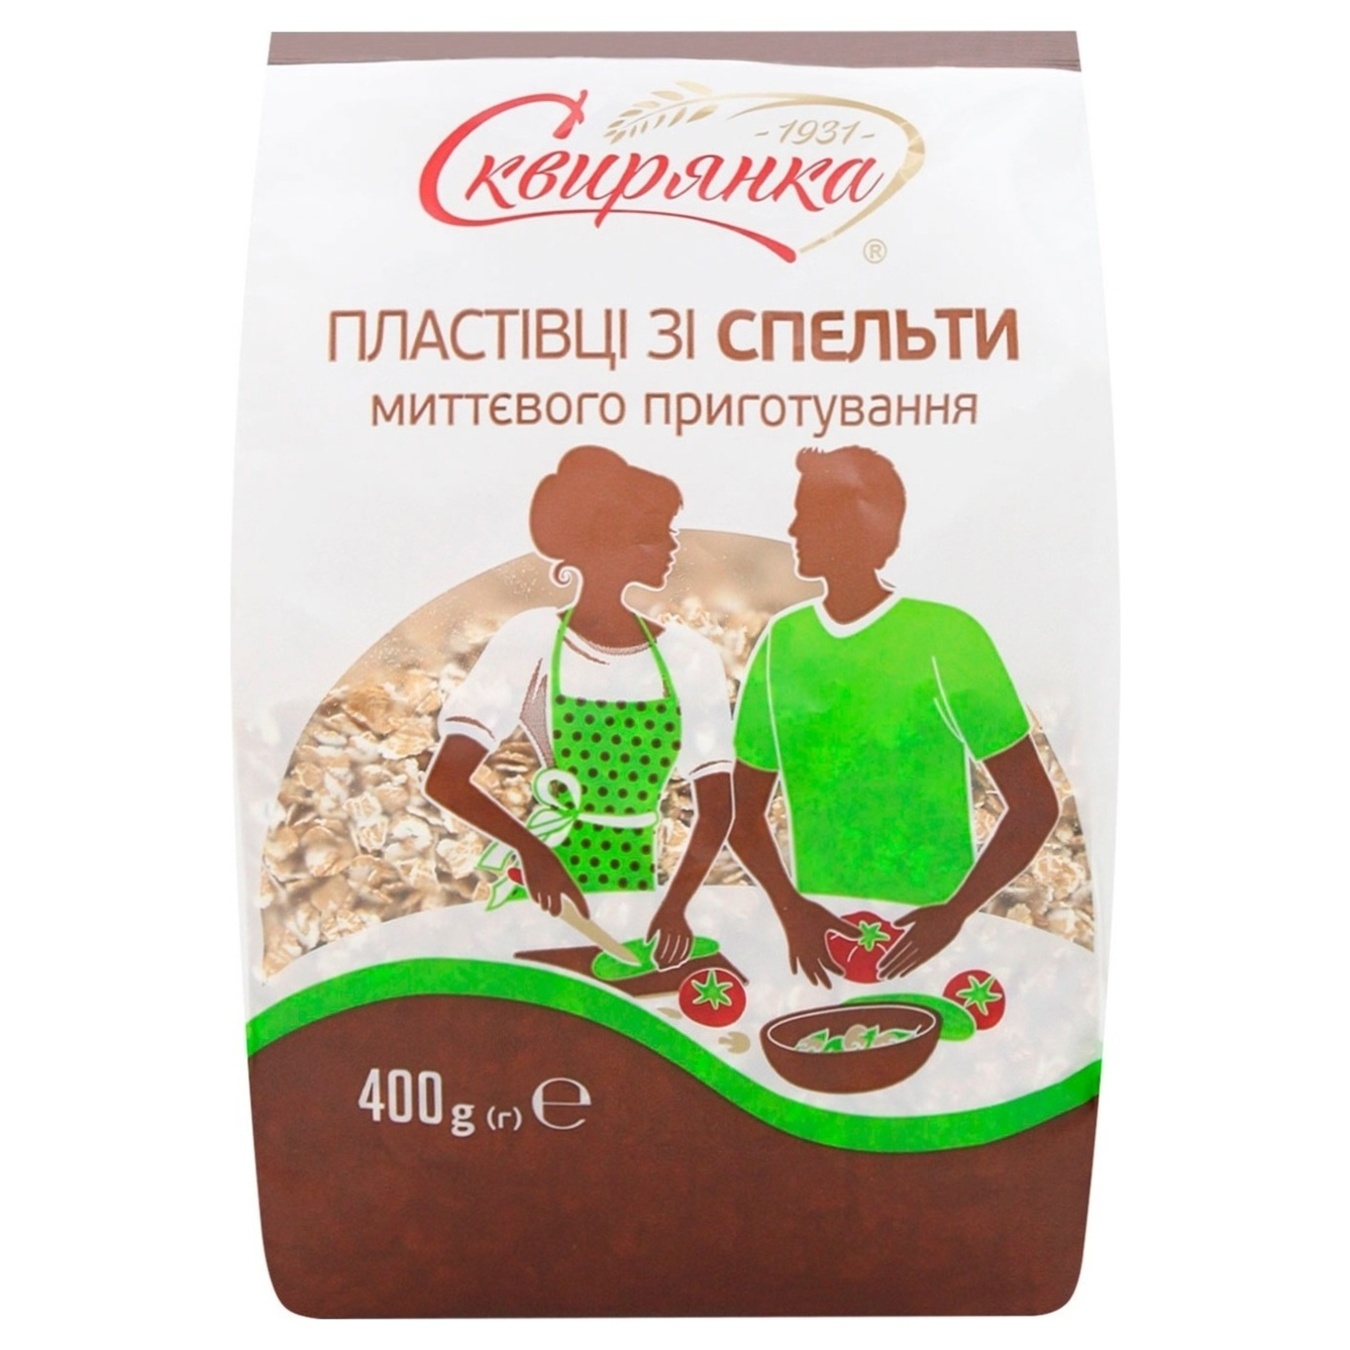 Skvyryanka wheat flakes from spelled 400g